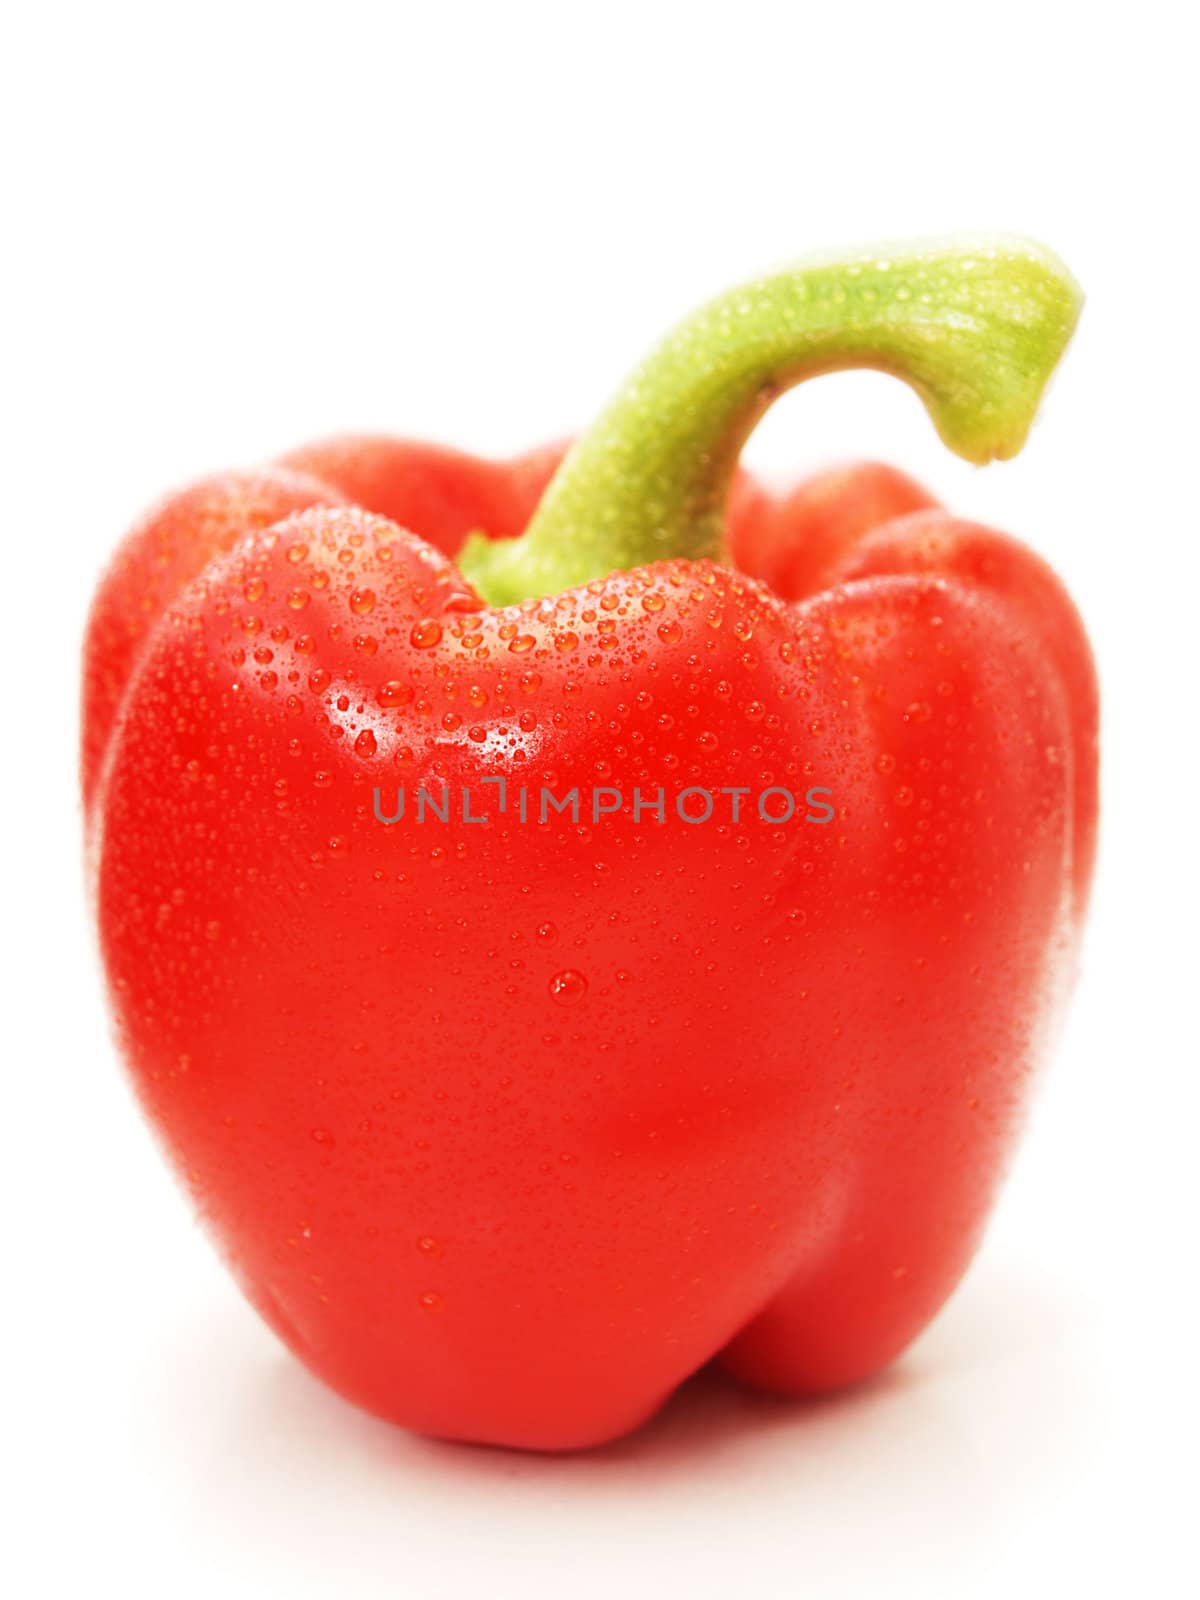 Red pepper by Arvebettum